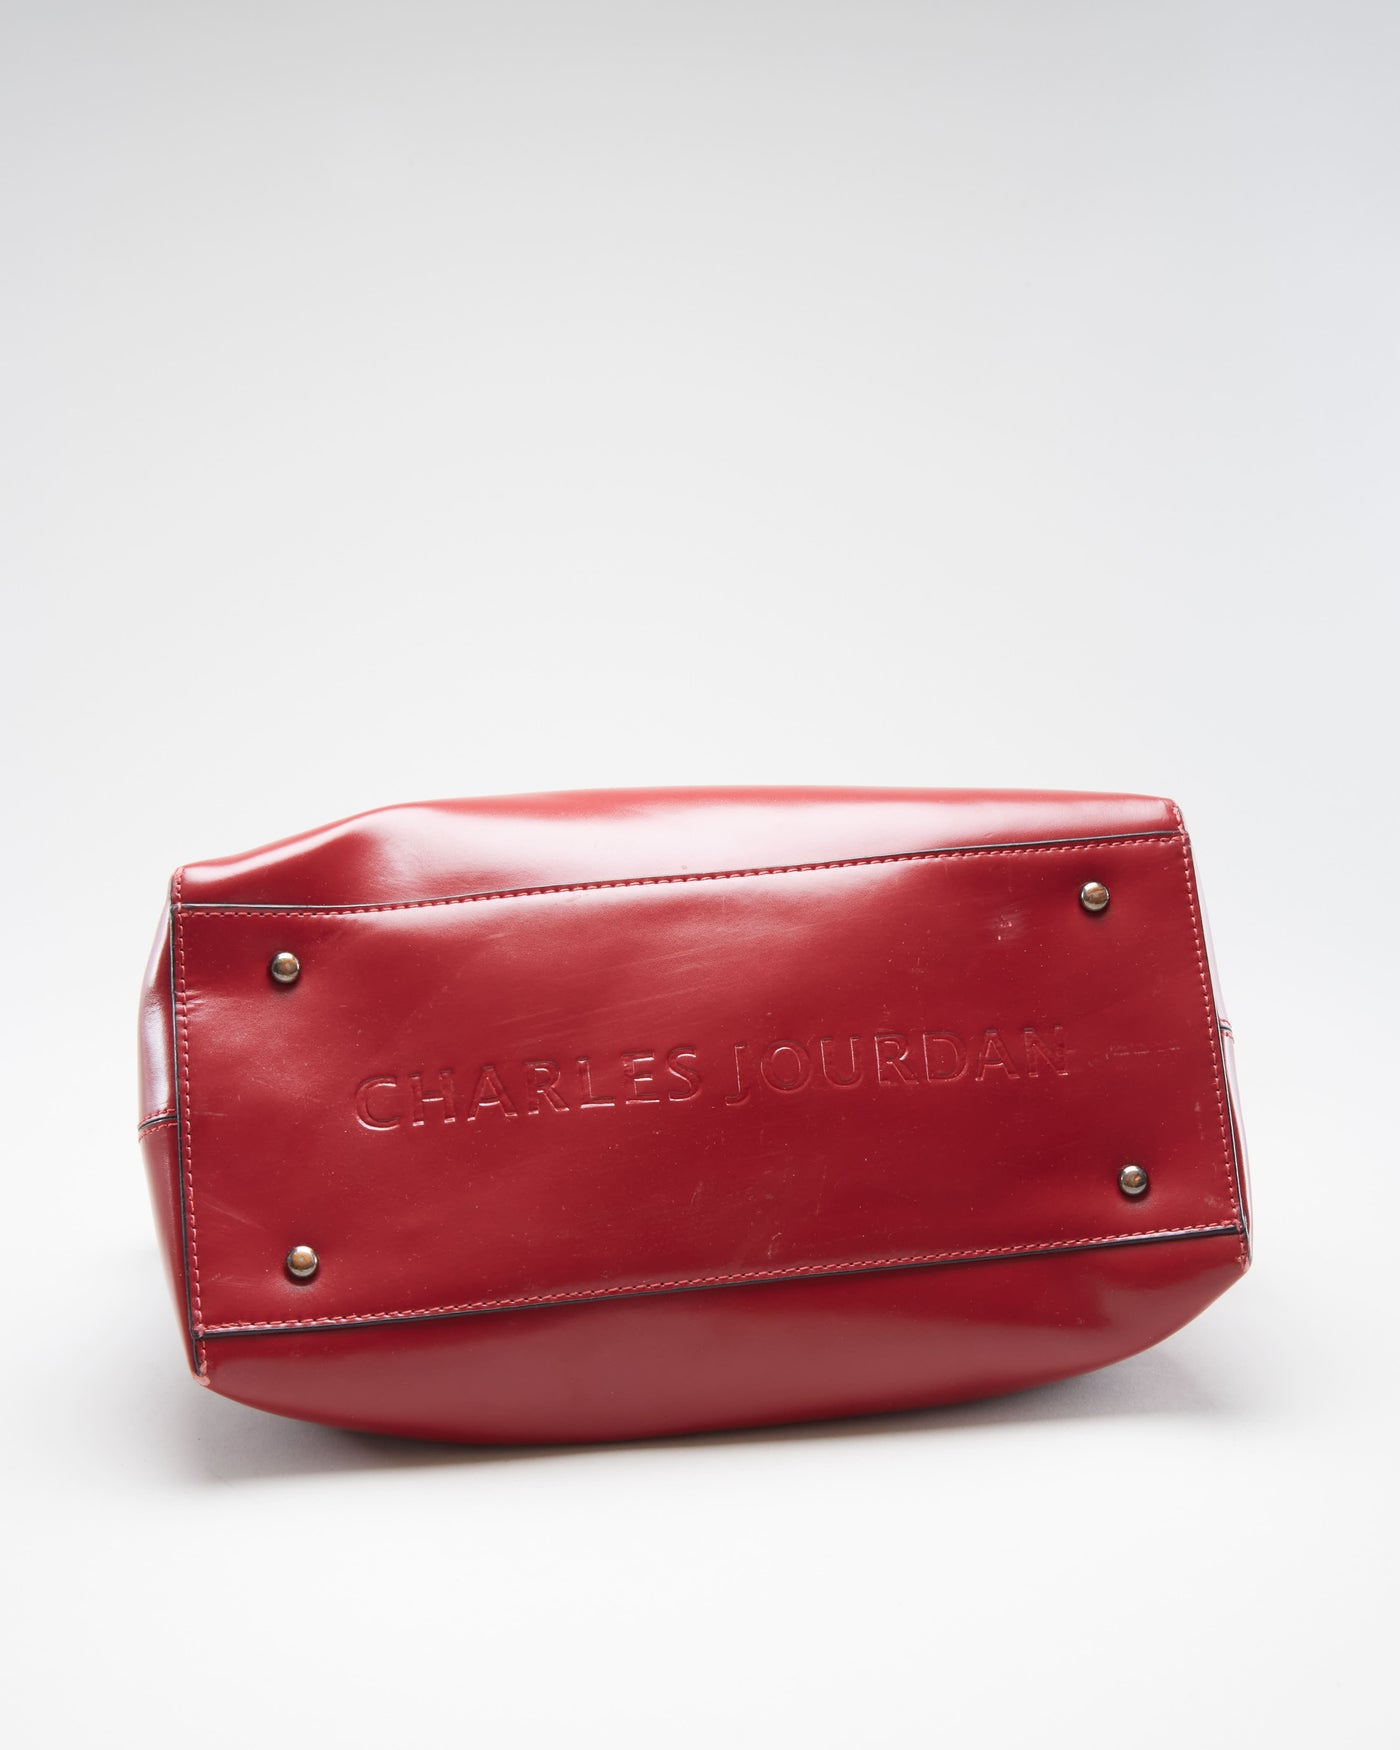 Y2K Charles Jourdan Red Leather Handbag